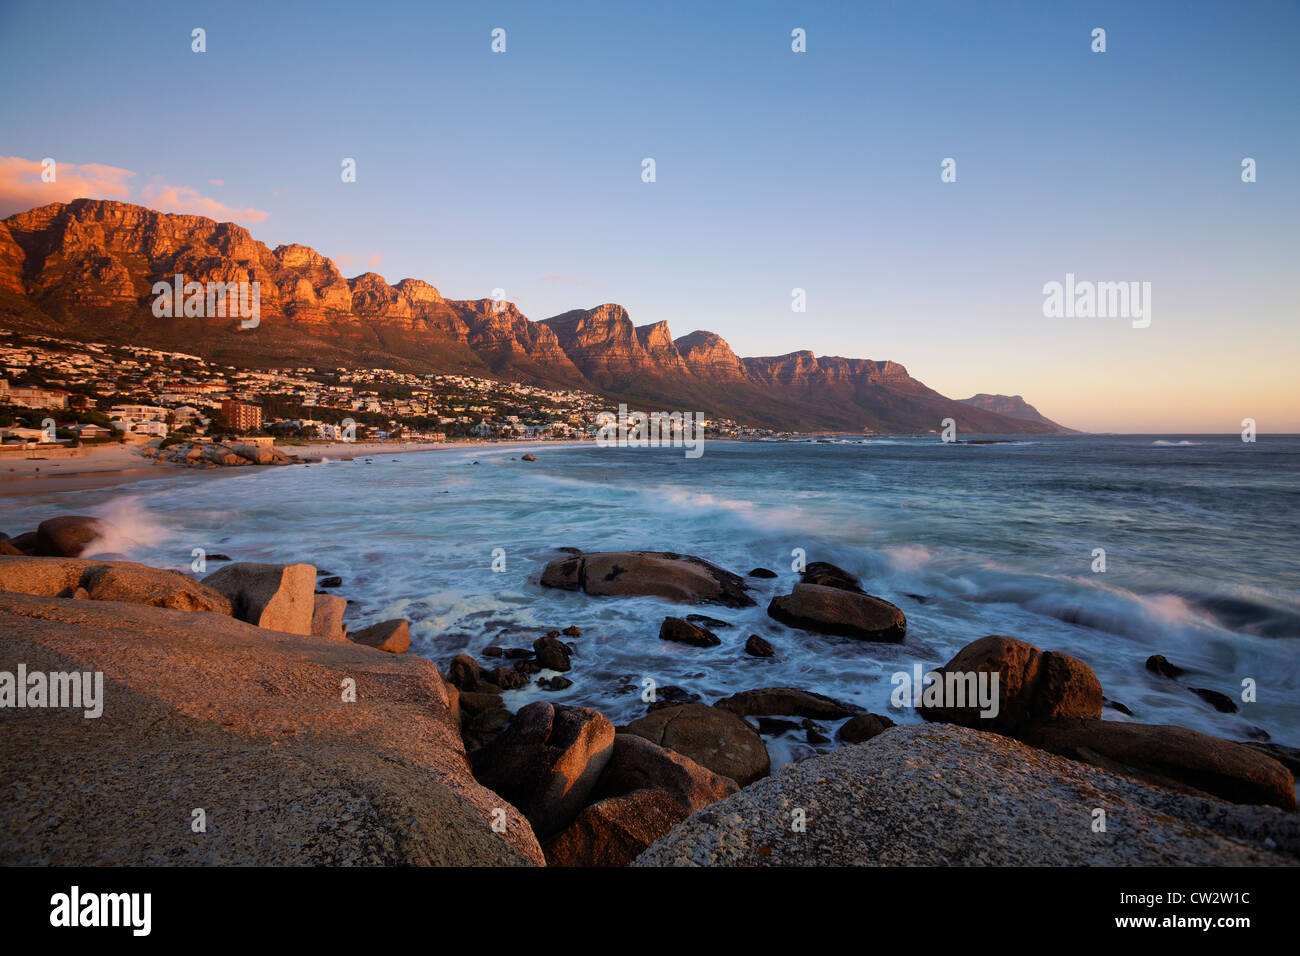 La playa de Camps Bay con vistas de las montañas de los Doce Apóstoles.Ciudad del Cabo, Sudáfrica. Foto de stock